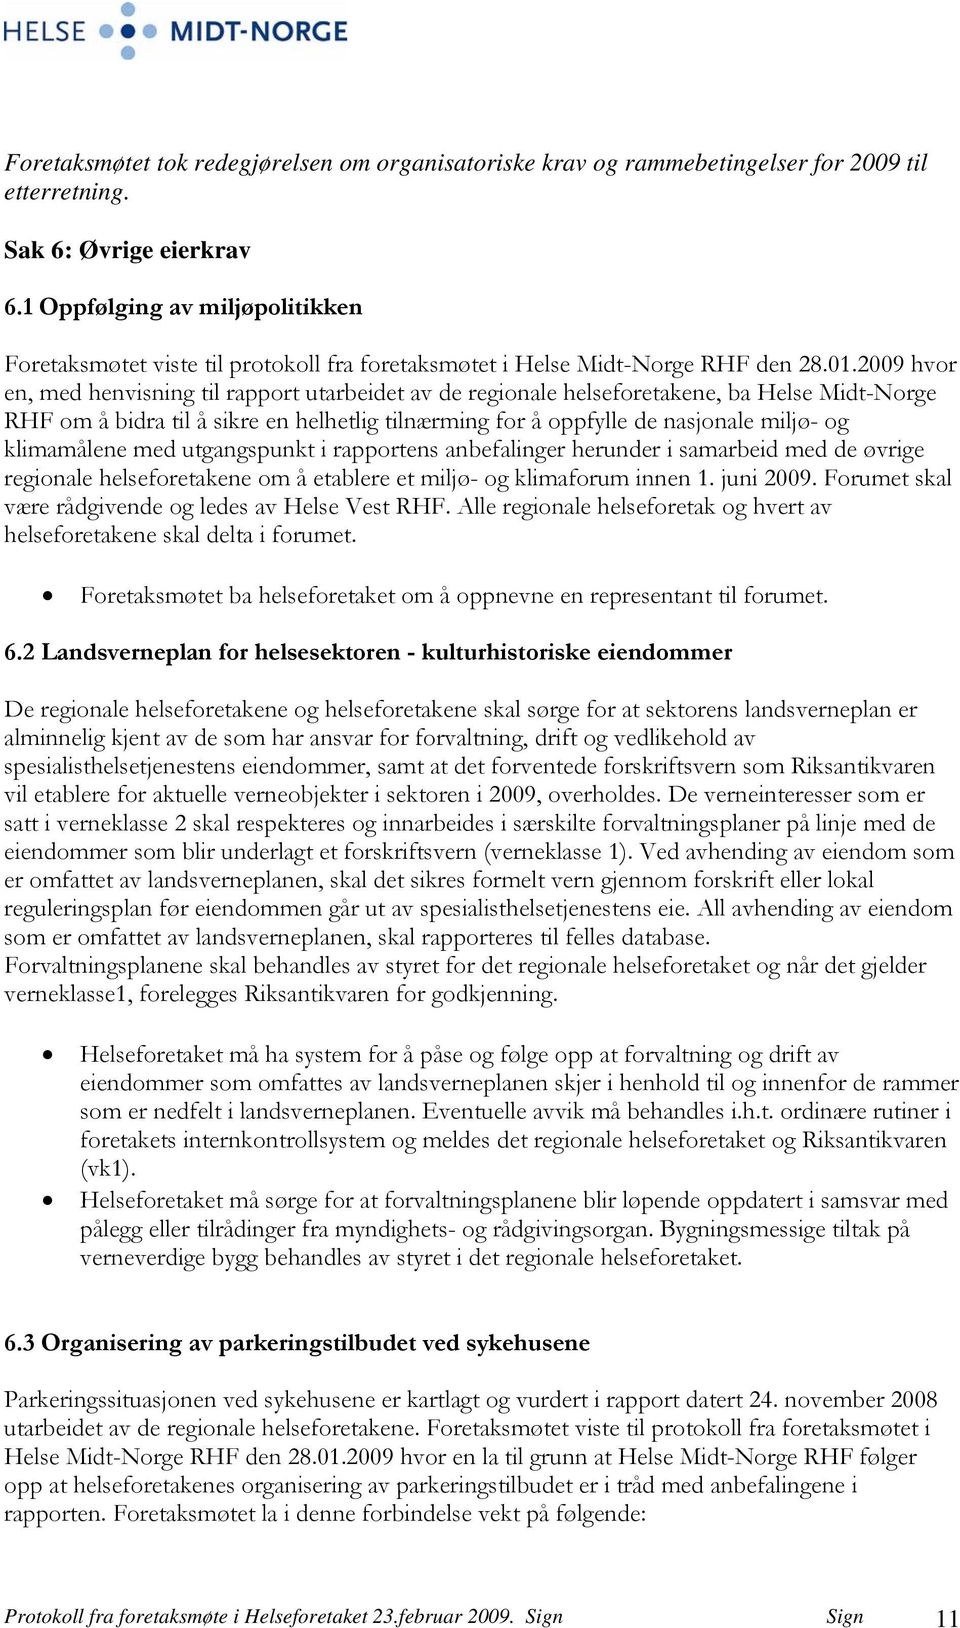 2009 hvor en, med henvisning til rapport utarbeidet av de regionale helseforetakene, ba Helse Midt-Norge RHF om å bidra til å sikre en helhetlig tilnærming for å oppfylle de nasjonale miljø- og